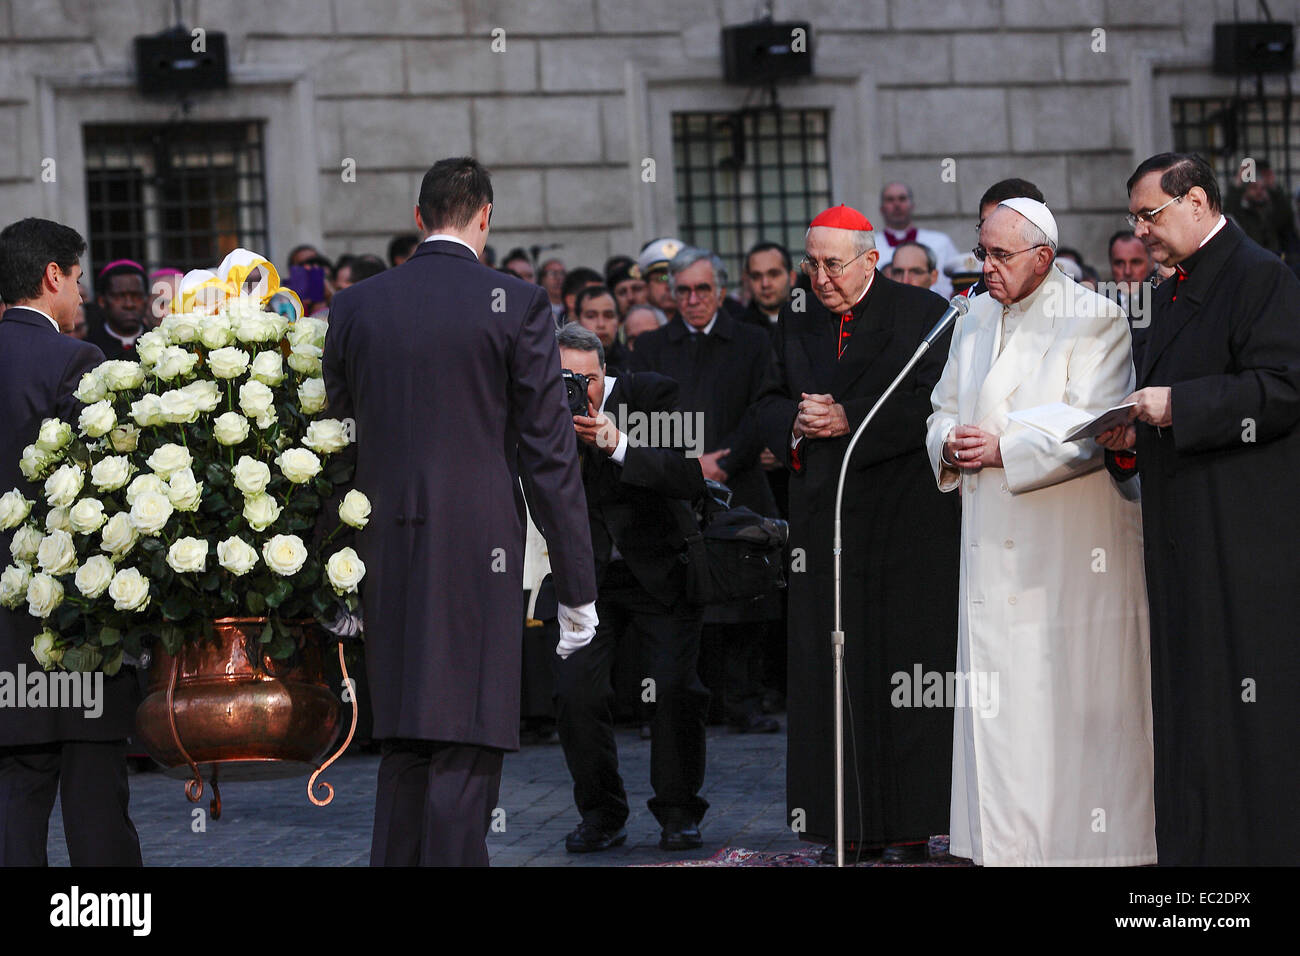 Roma, Italia. 8 dicembre, 2014. Papa Francesco celebra l'Immacolata Concezione Credito: Davvero Facile Star/Alamy Live News Foto Stock